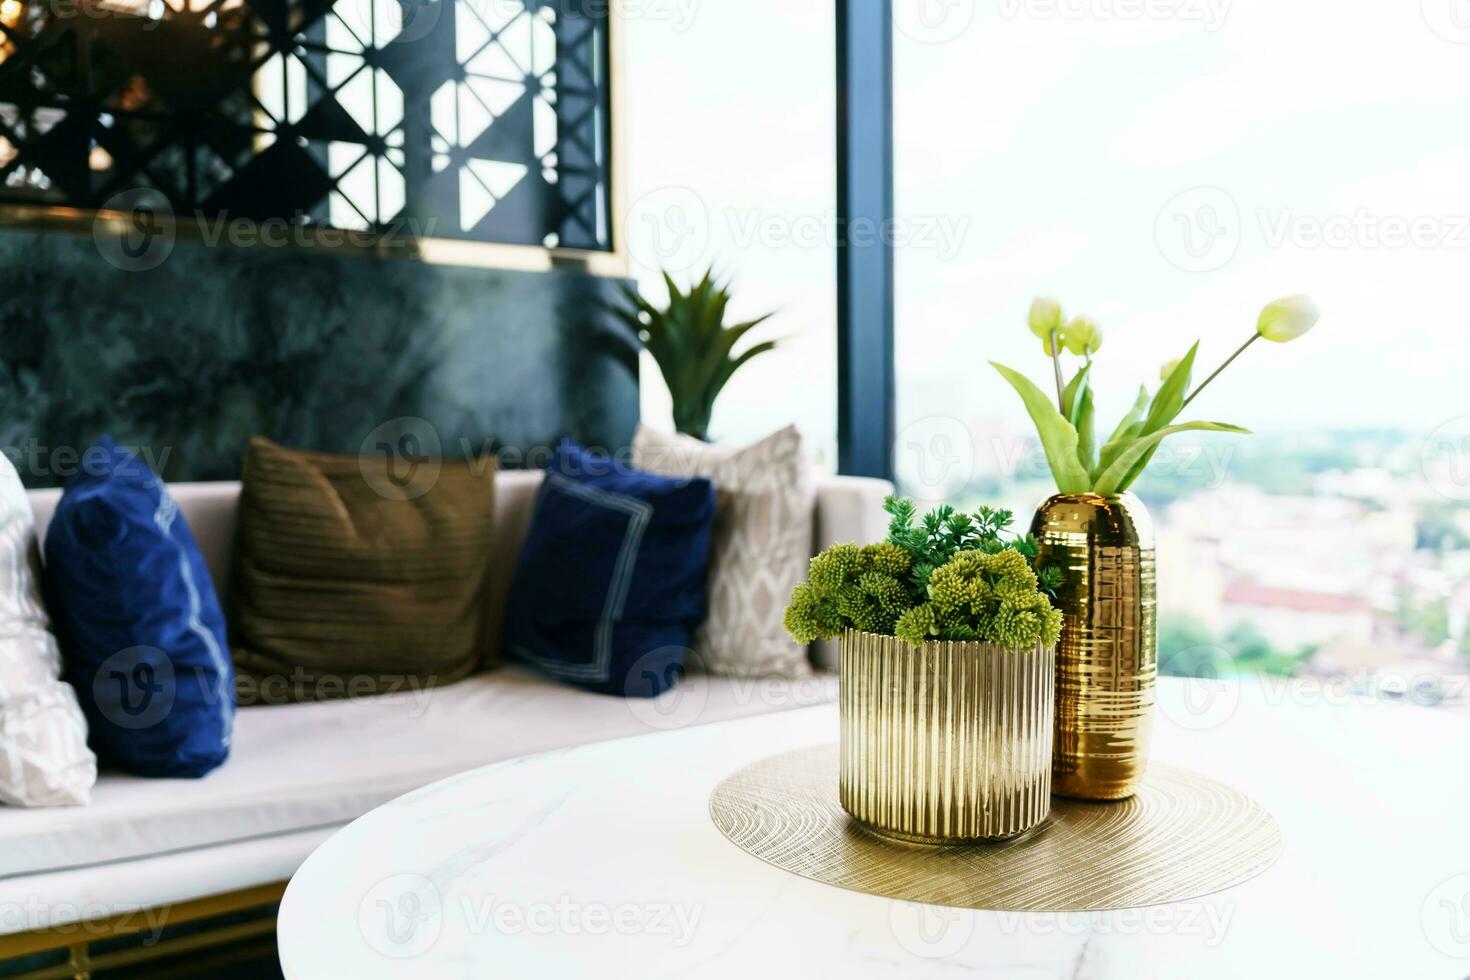 Hem interiör med dekor trä- tabell och växter dekoration interiör design av levande rum foto